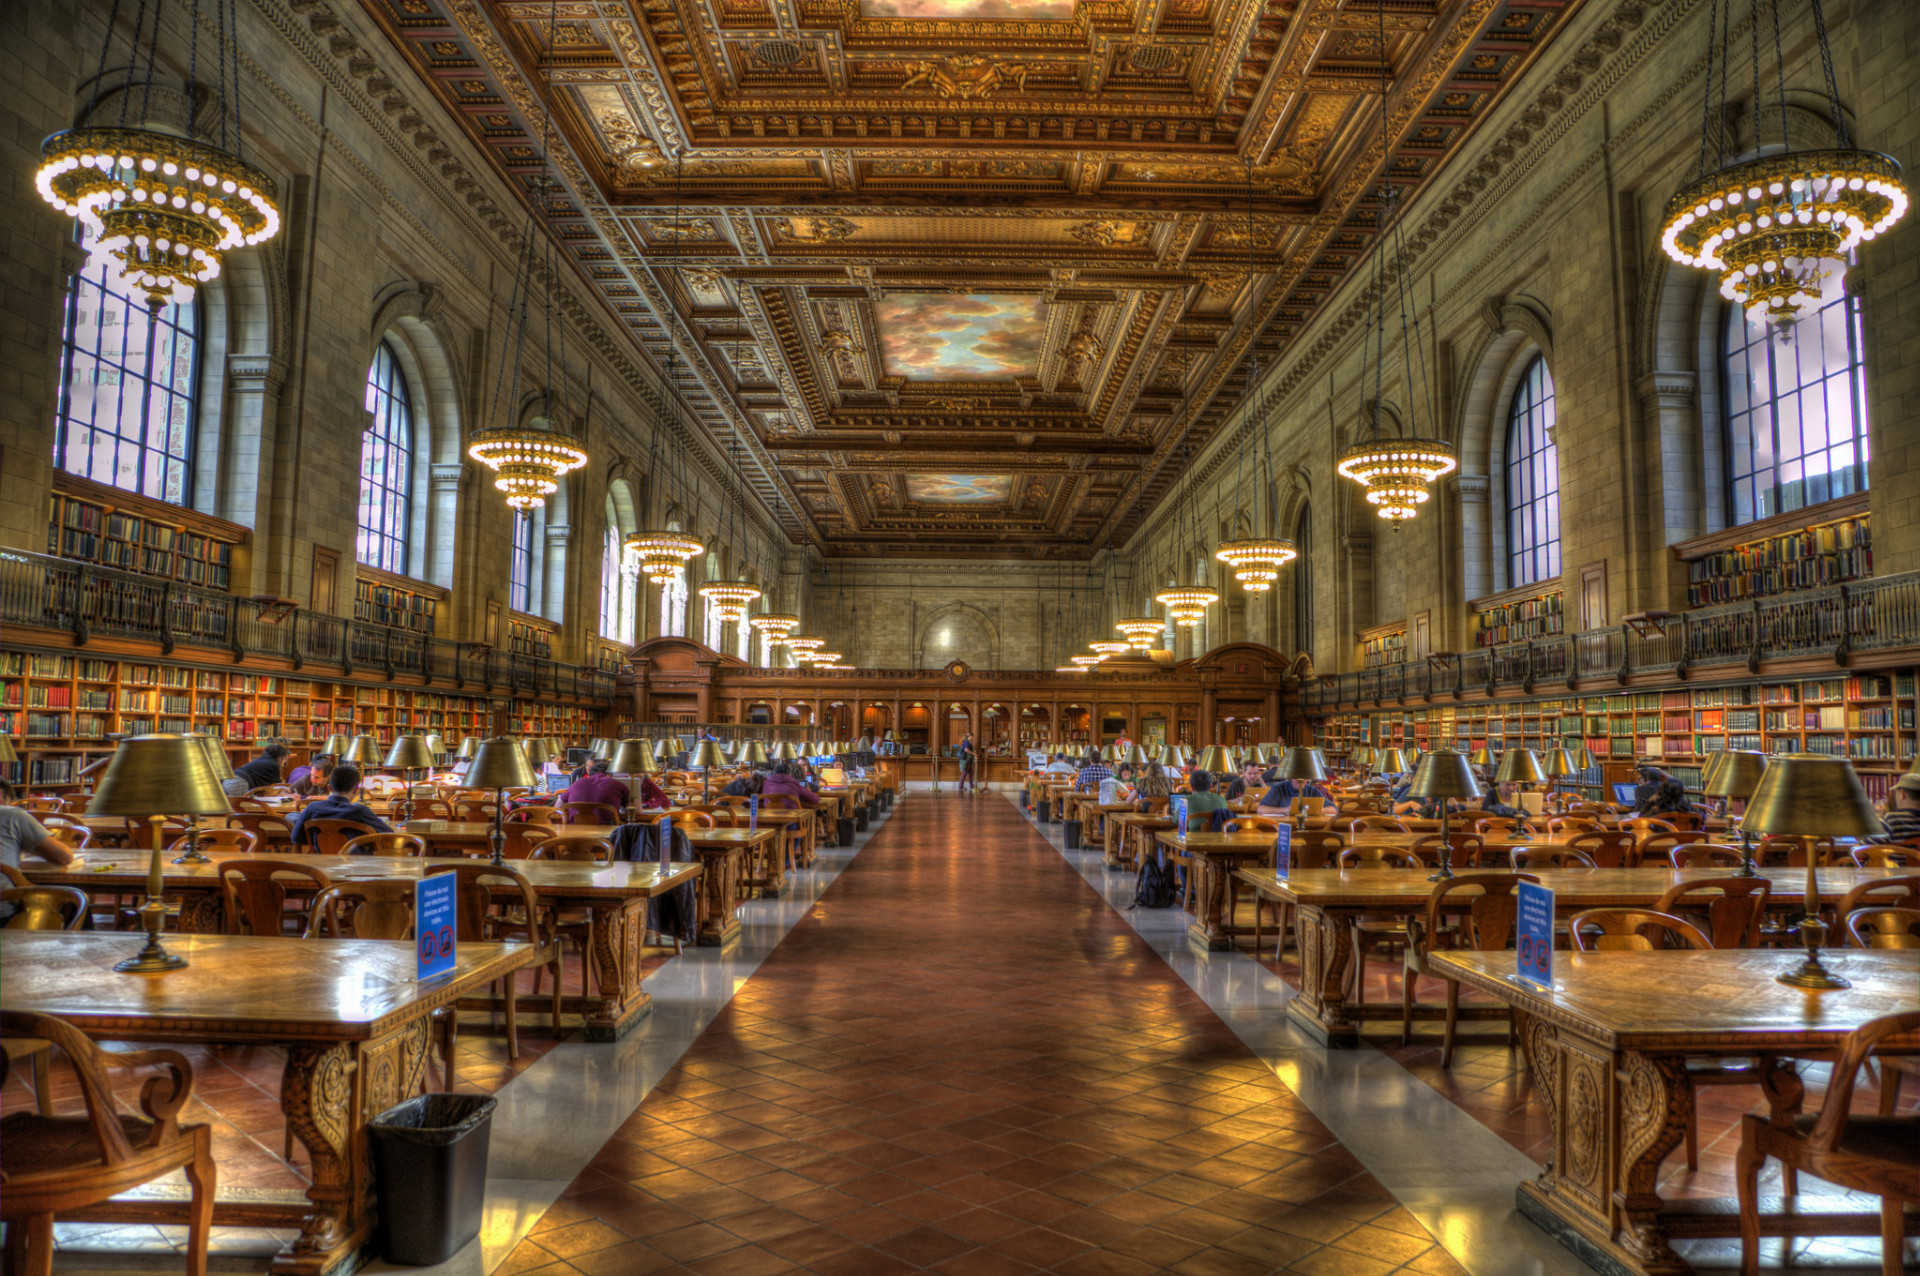 Verejná knižnica mesta New York je architektonickou pamiatkou, kde veľký, mramorový lev stráži viac ako 50 miliónov kníh.